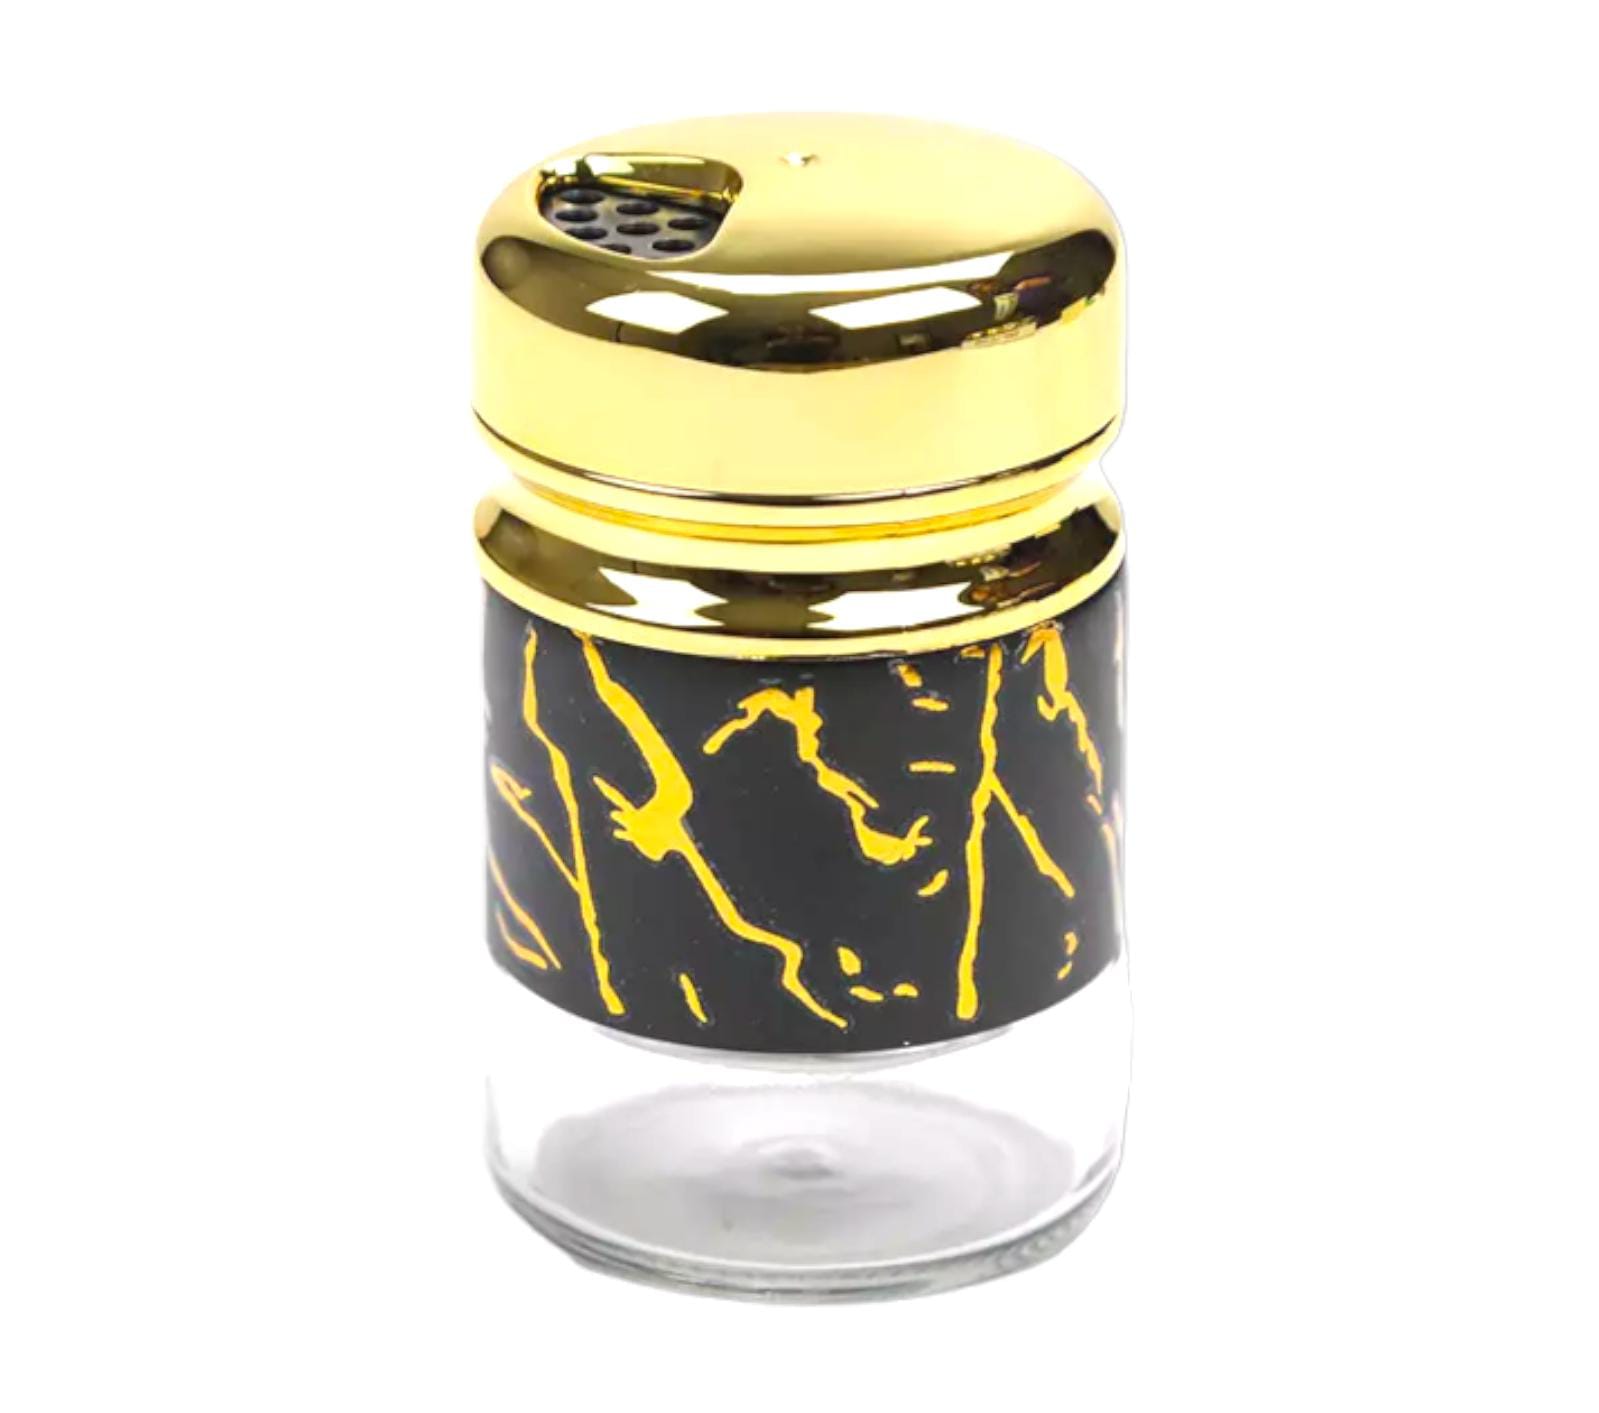 Salt And Spices Storage Jar